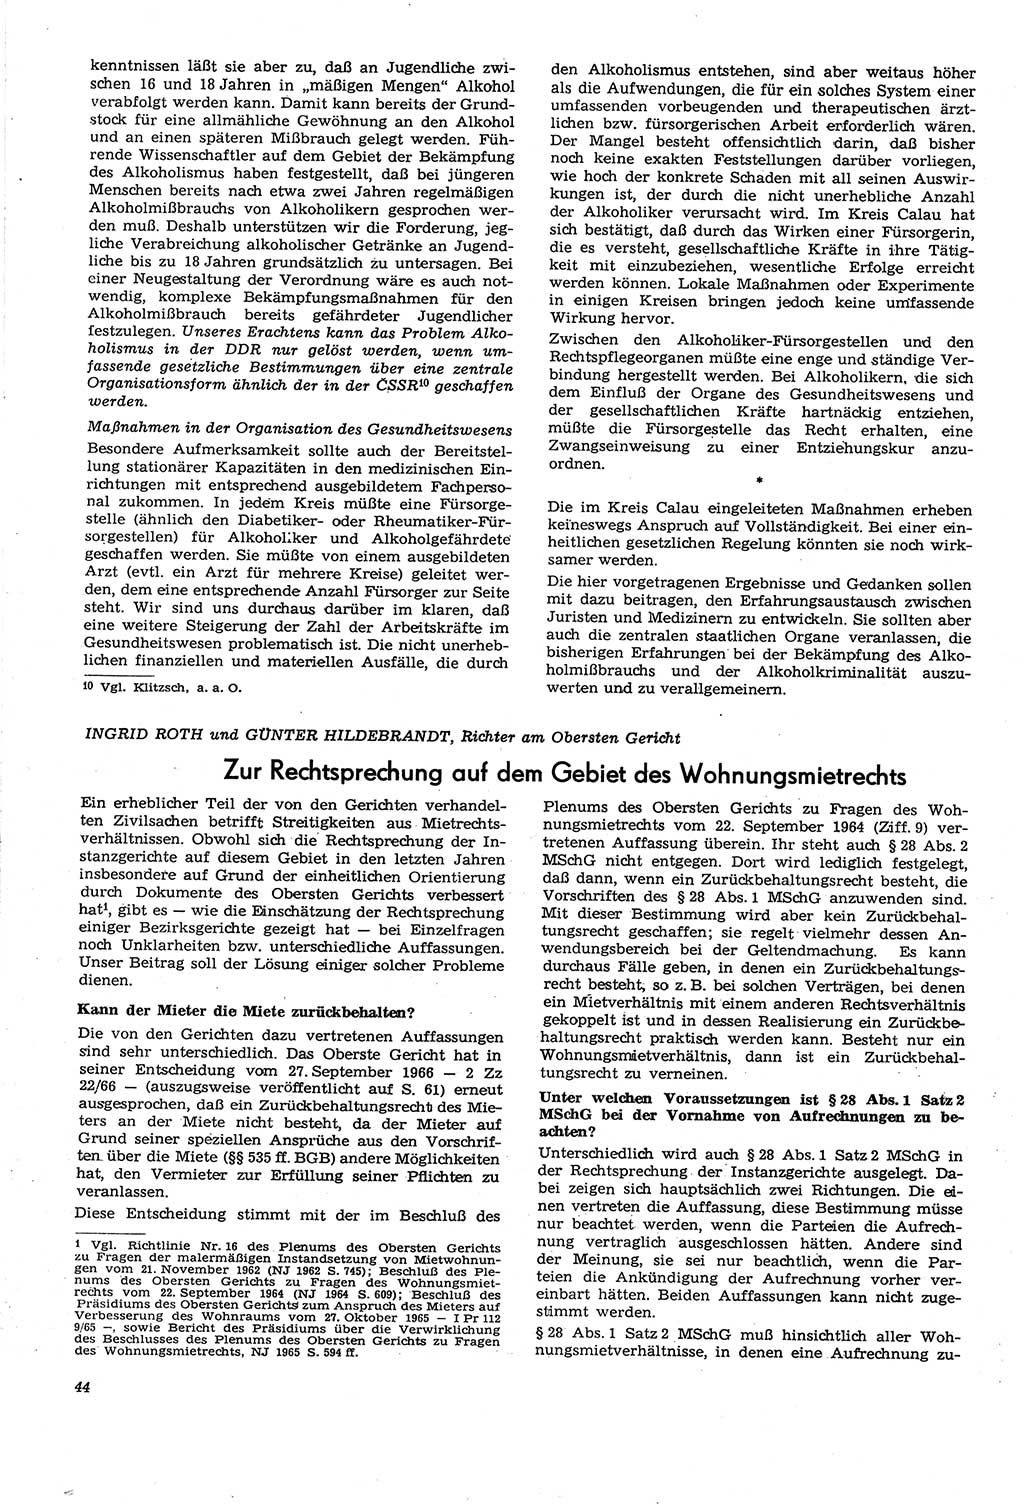 Neue Justiz (NJ), Zeitschrift für Recht und Rechtswissenschaft [Deutsche Demokratische Republik (DDR)], 21. Jahrgang 1967, Seite 44 (NJ DDR 1967, S. 44)